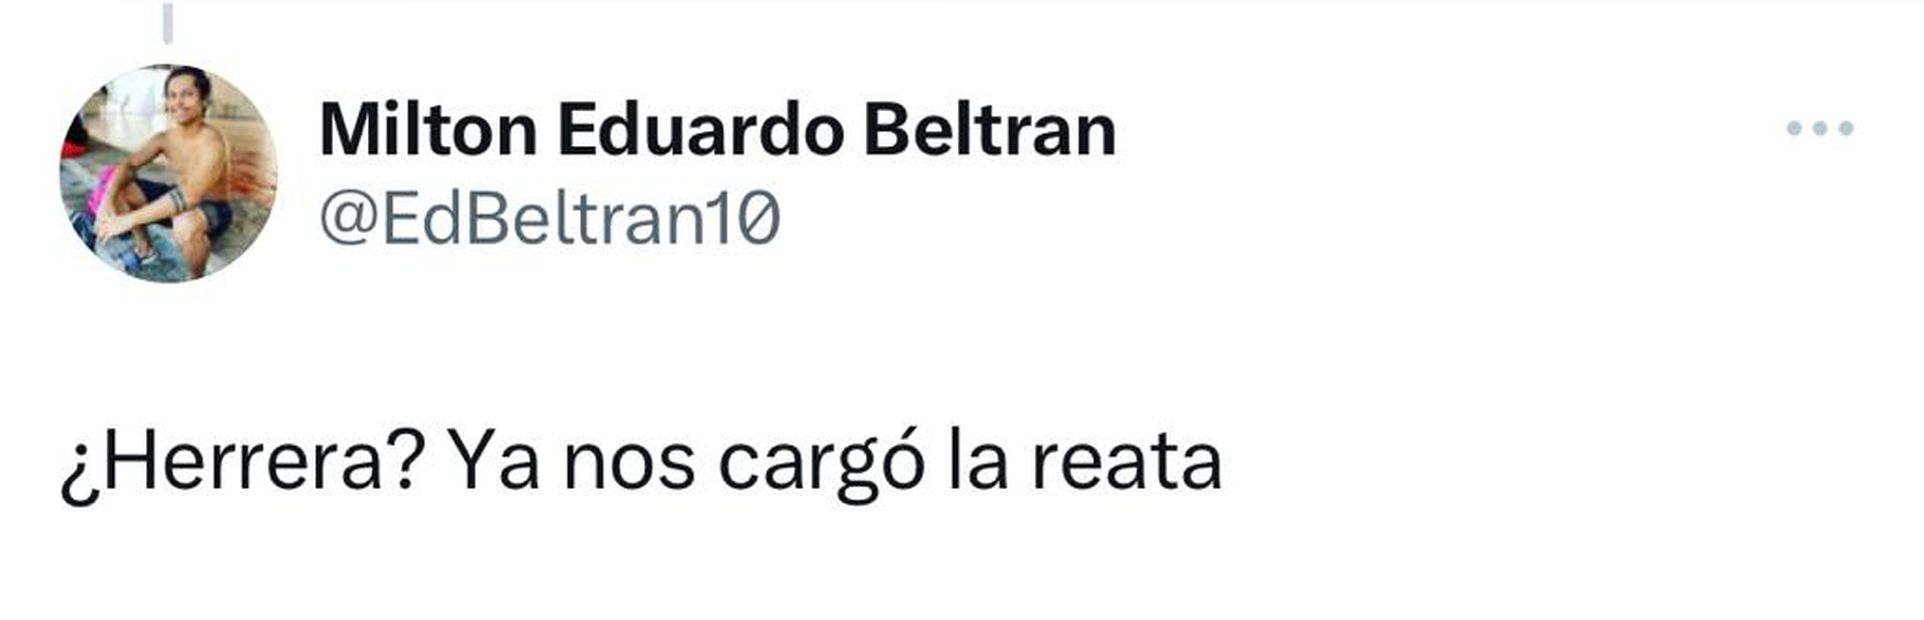 Tweets Héctor Herrera